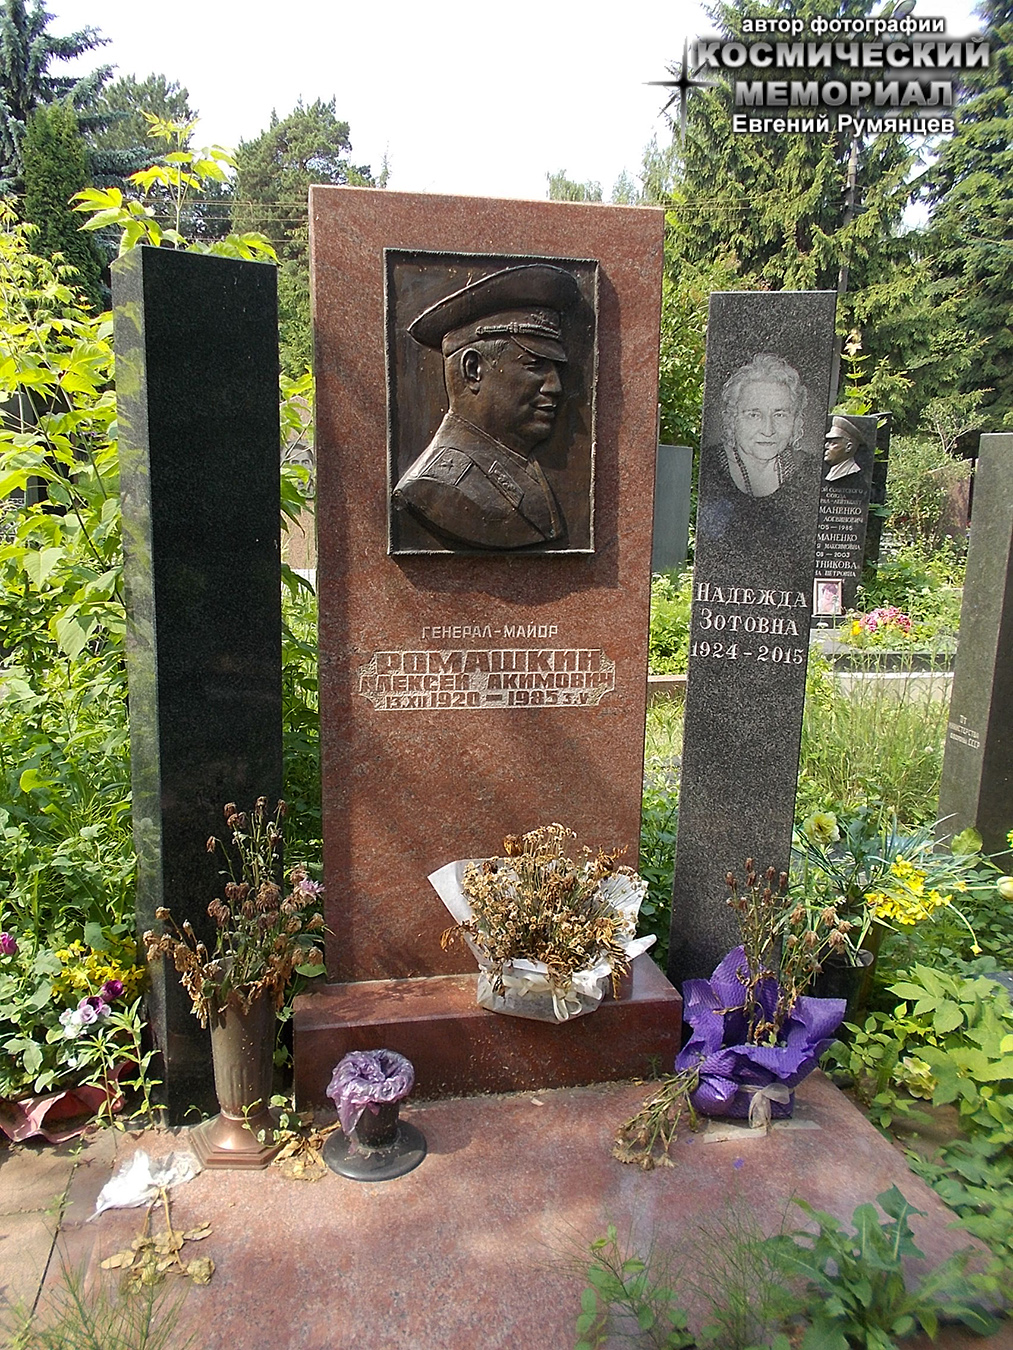 кунцевское кладбище могилы знаменитостей фото